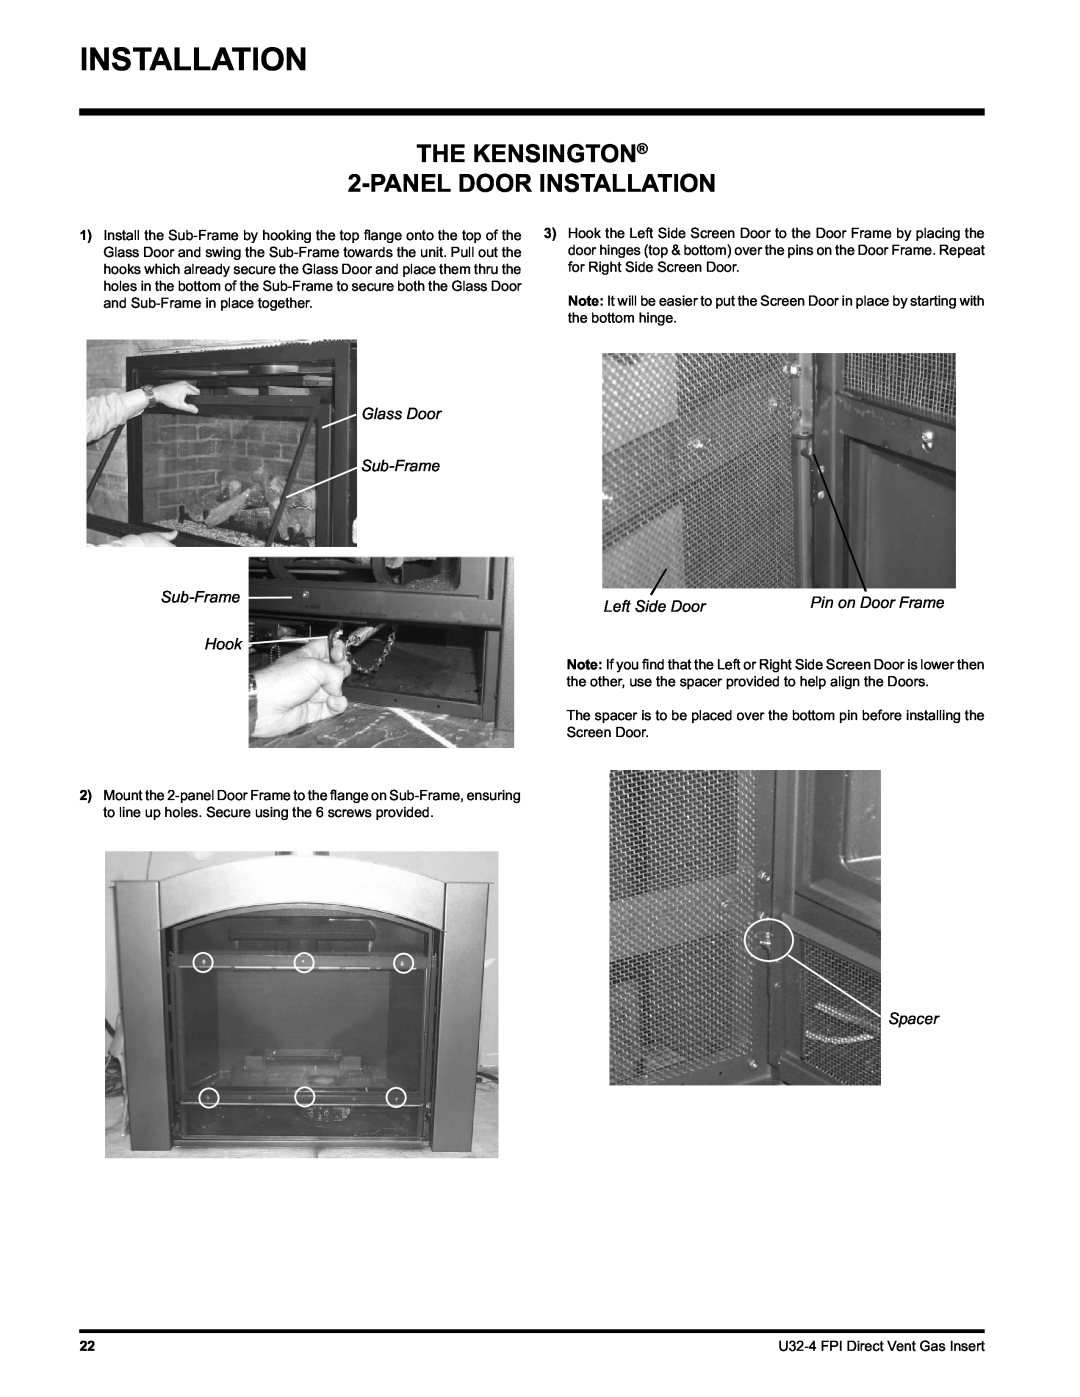 Regency U32-LP4 THE KENSINGTON 2-PANELDOOR INSTALLATION, Glass Door Sub-Frame Sub-Frame Hook, Left Side Door, Spacer 